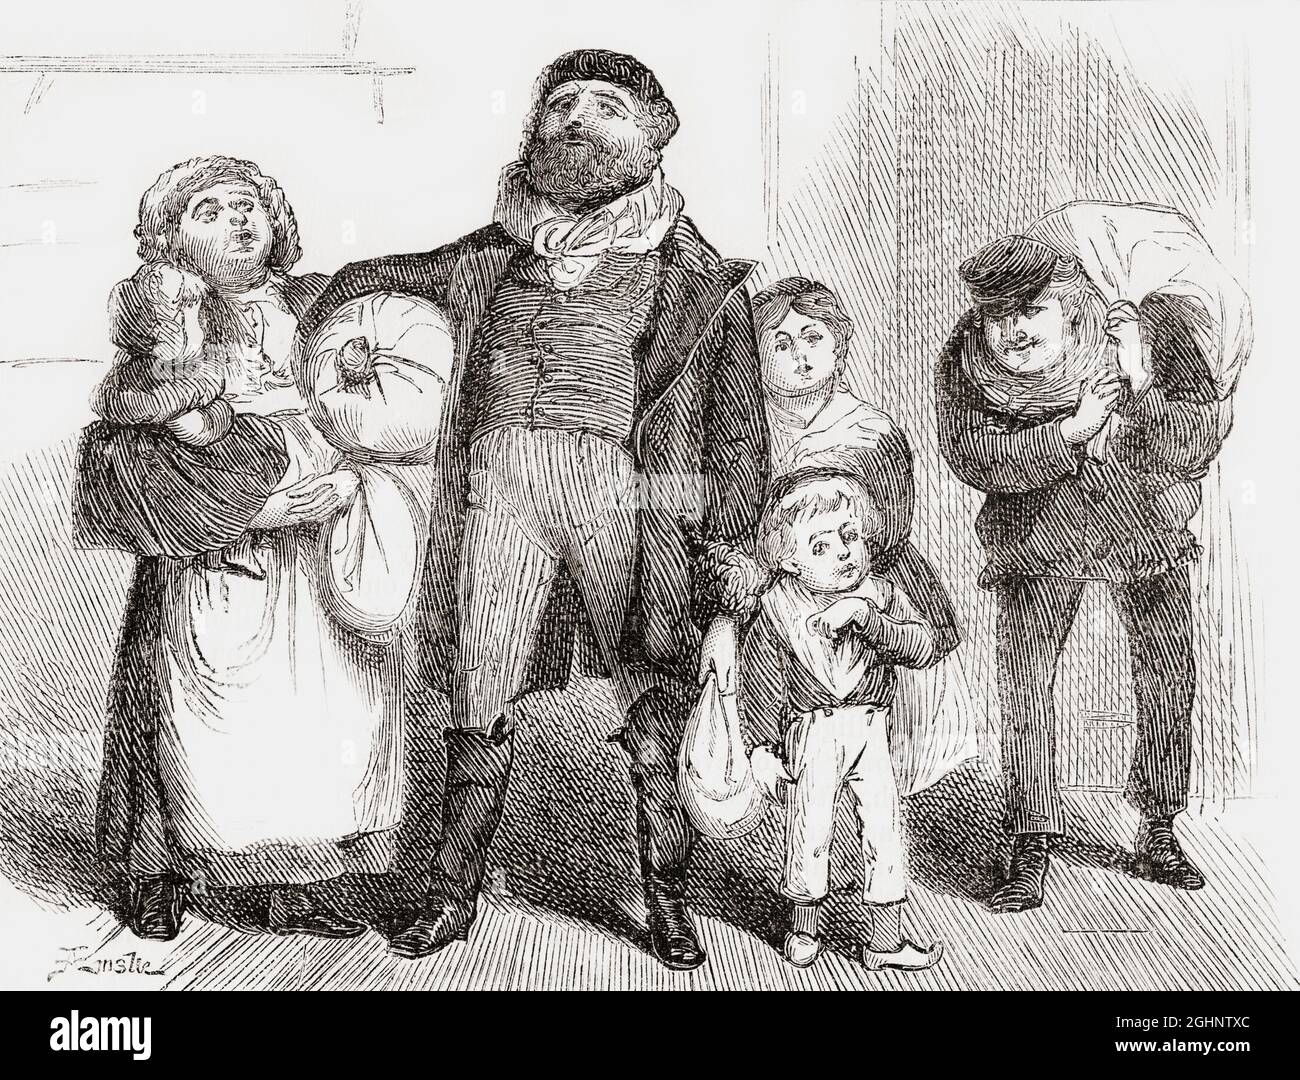 Un inmigrante europeo recién llegado y su familia llevando todas sus pertenencias, caminan por las calles de Nueva York. Después de una obra publicada en la década de 1870. Foto de stock